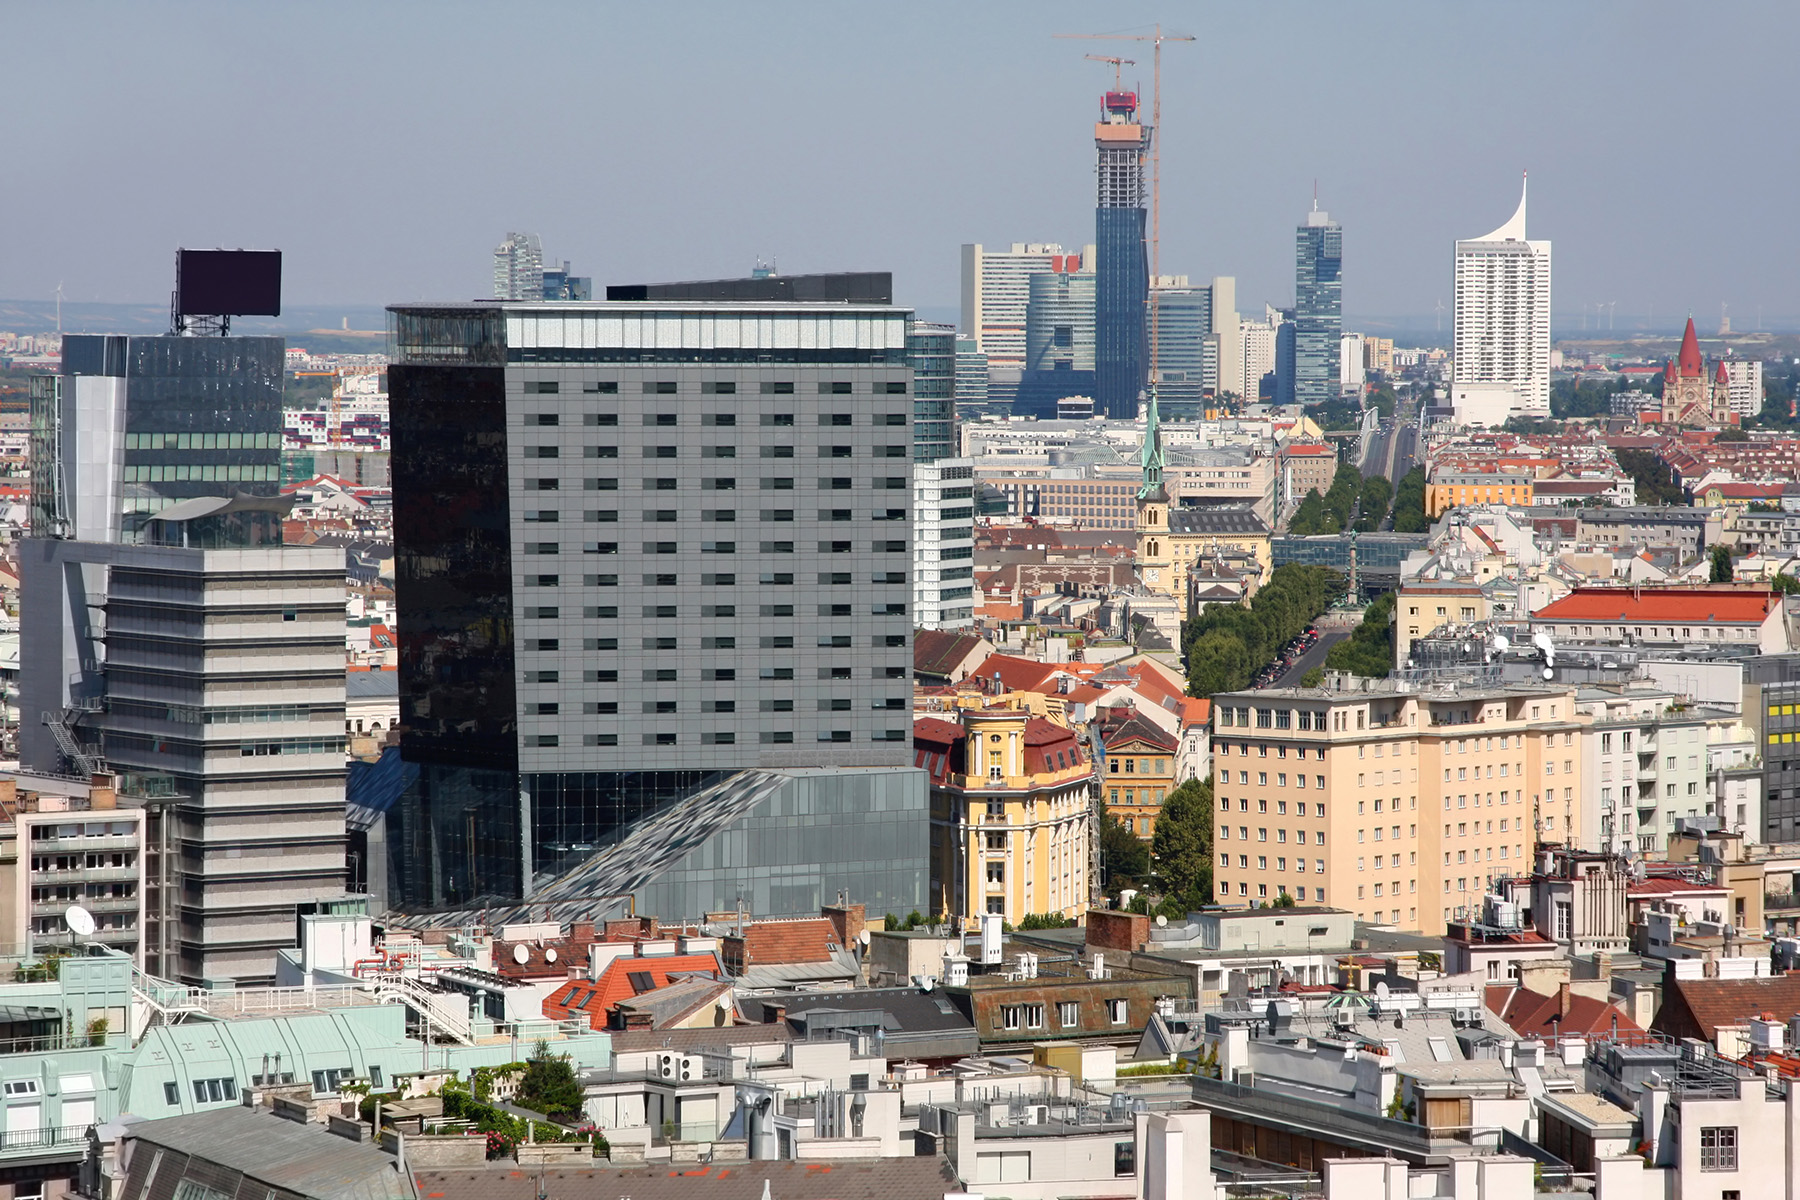 Skyline of Vienna, Austria - business district